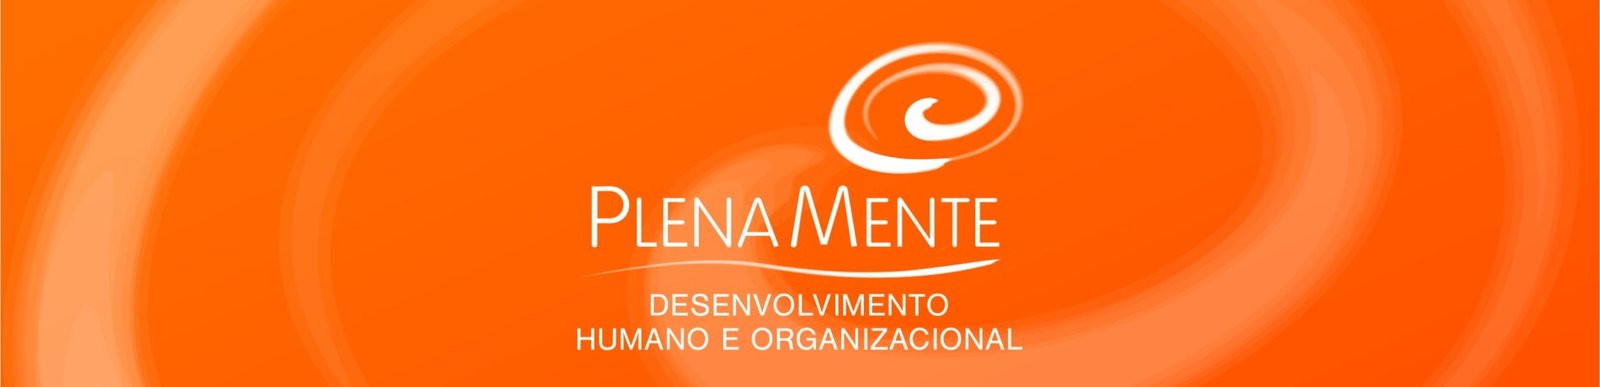 PlenaMente